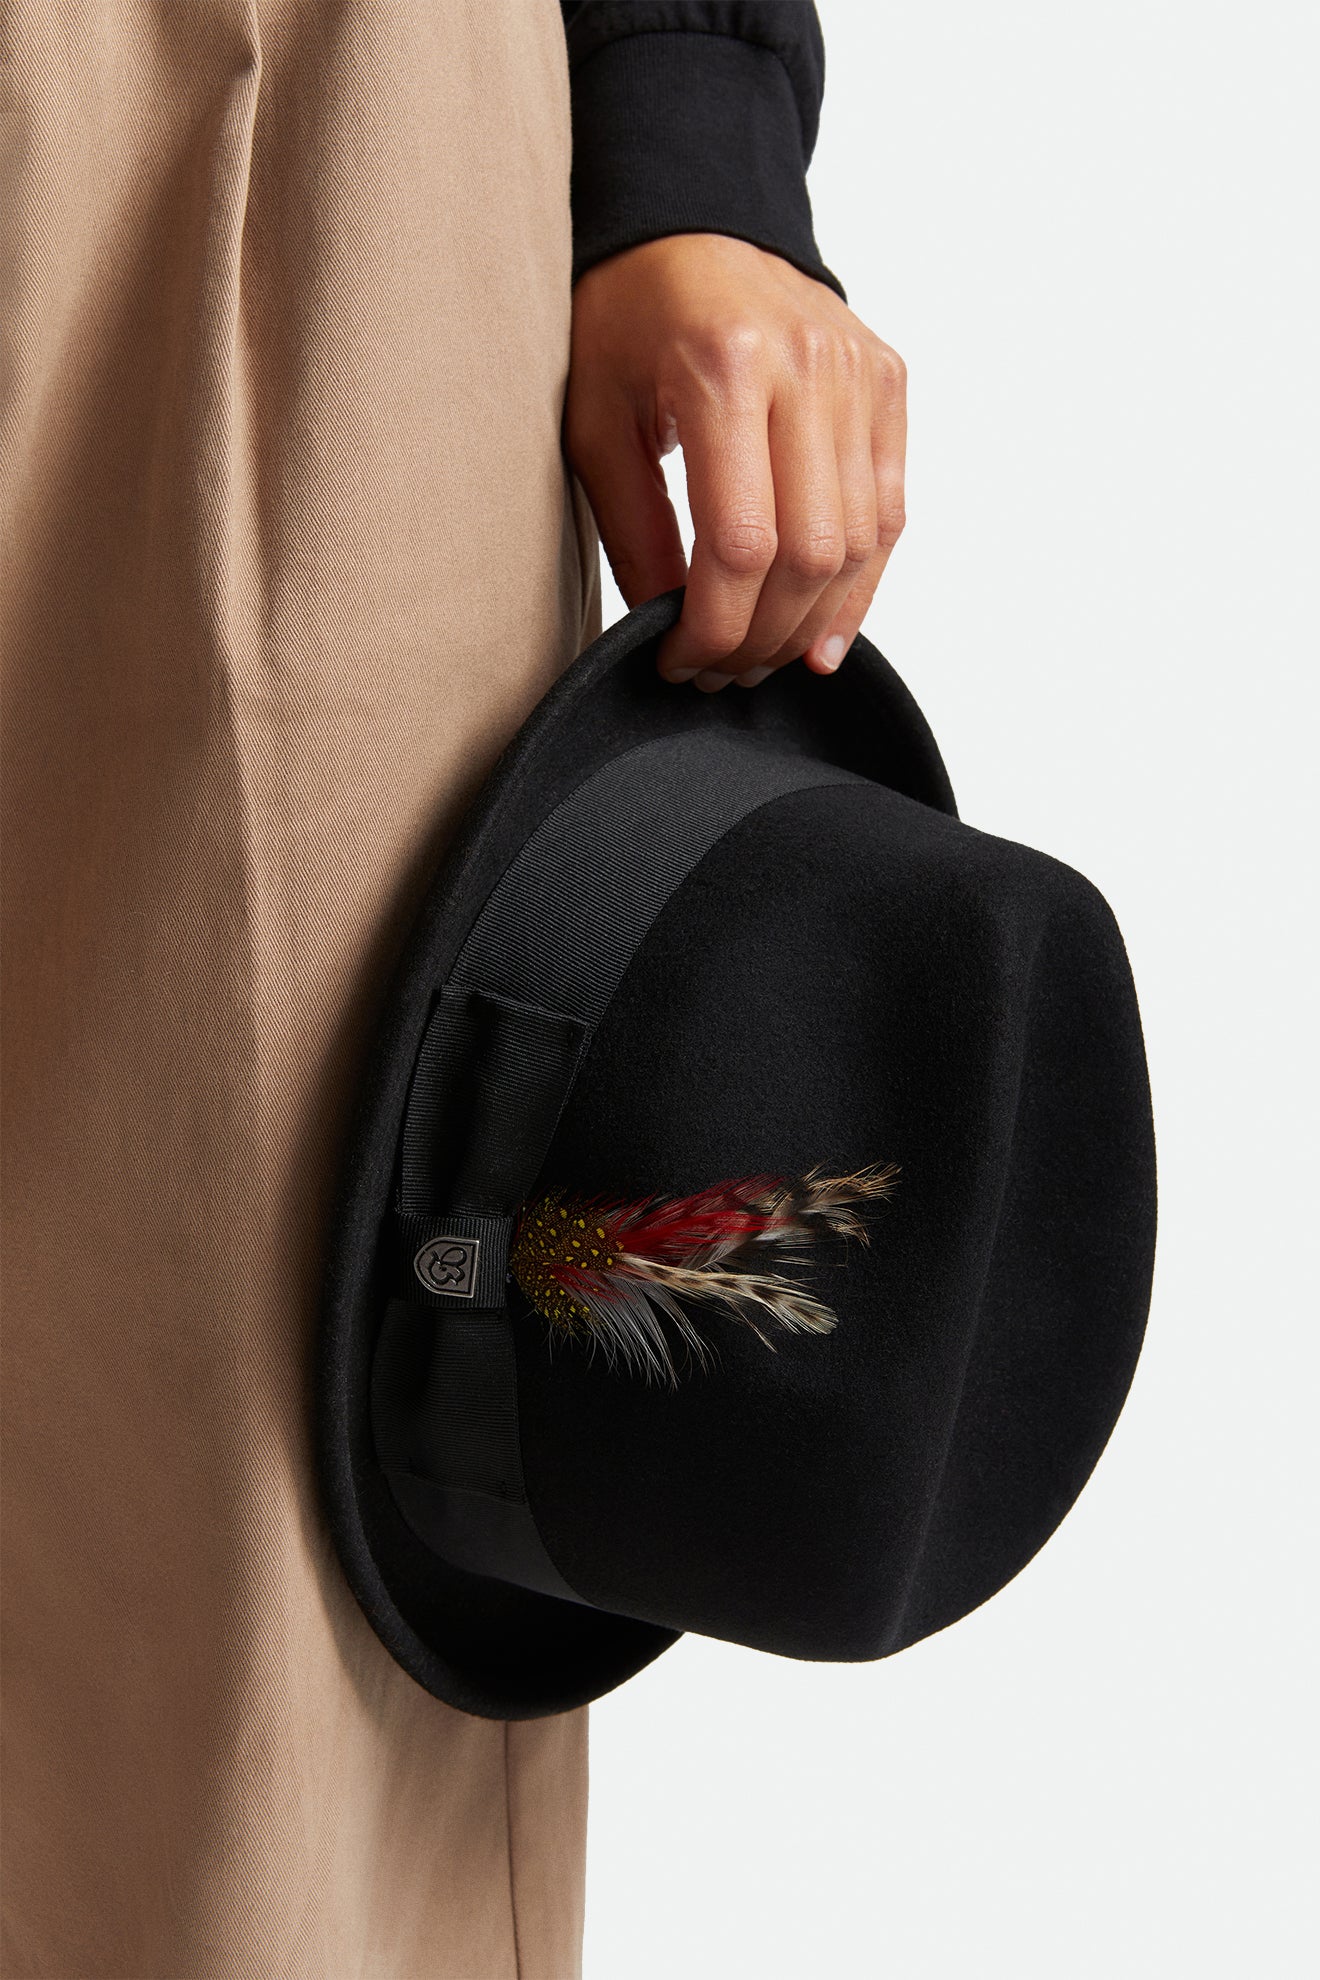 Felt Hats - Felt Fedoras for Men & Women – Brixton